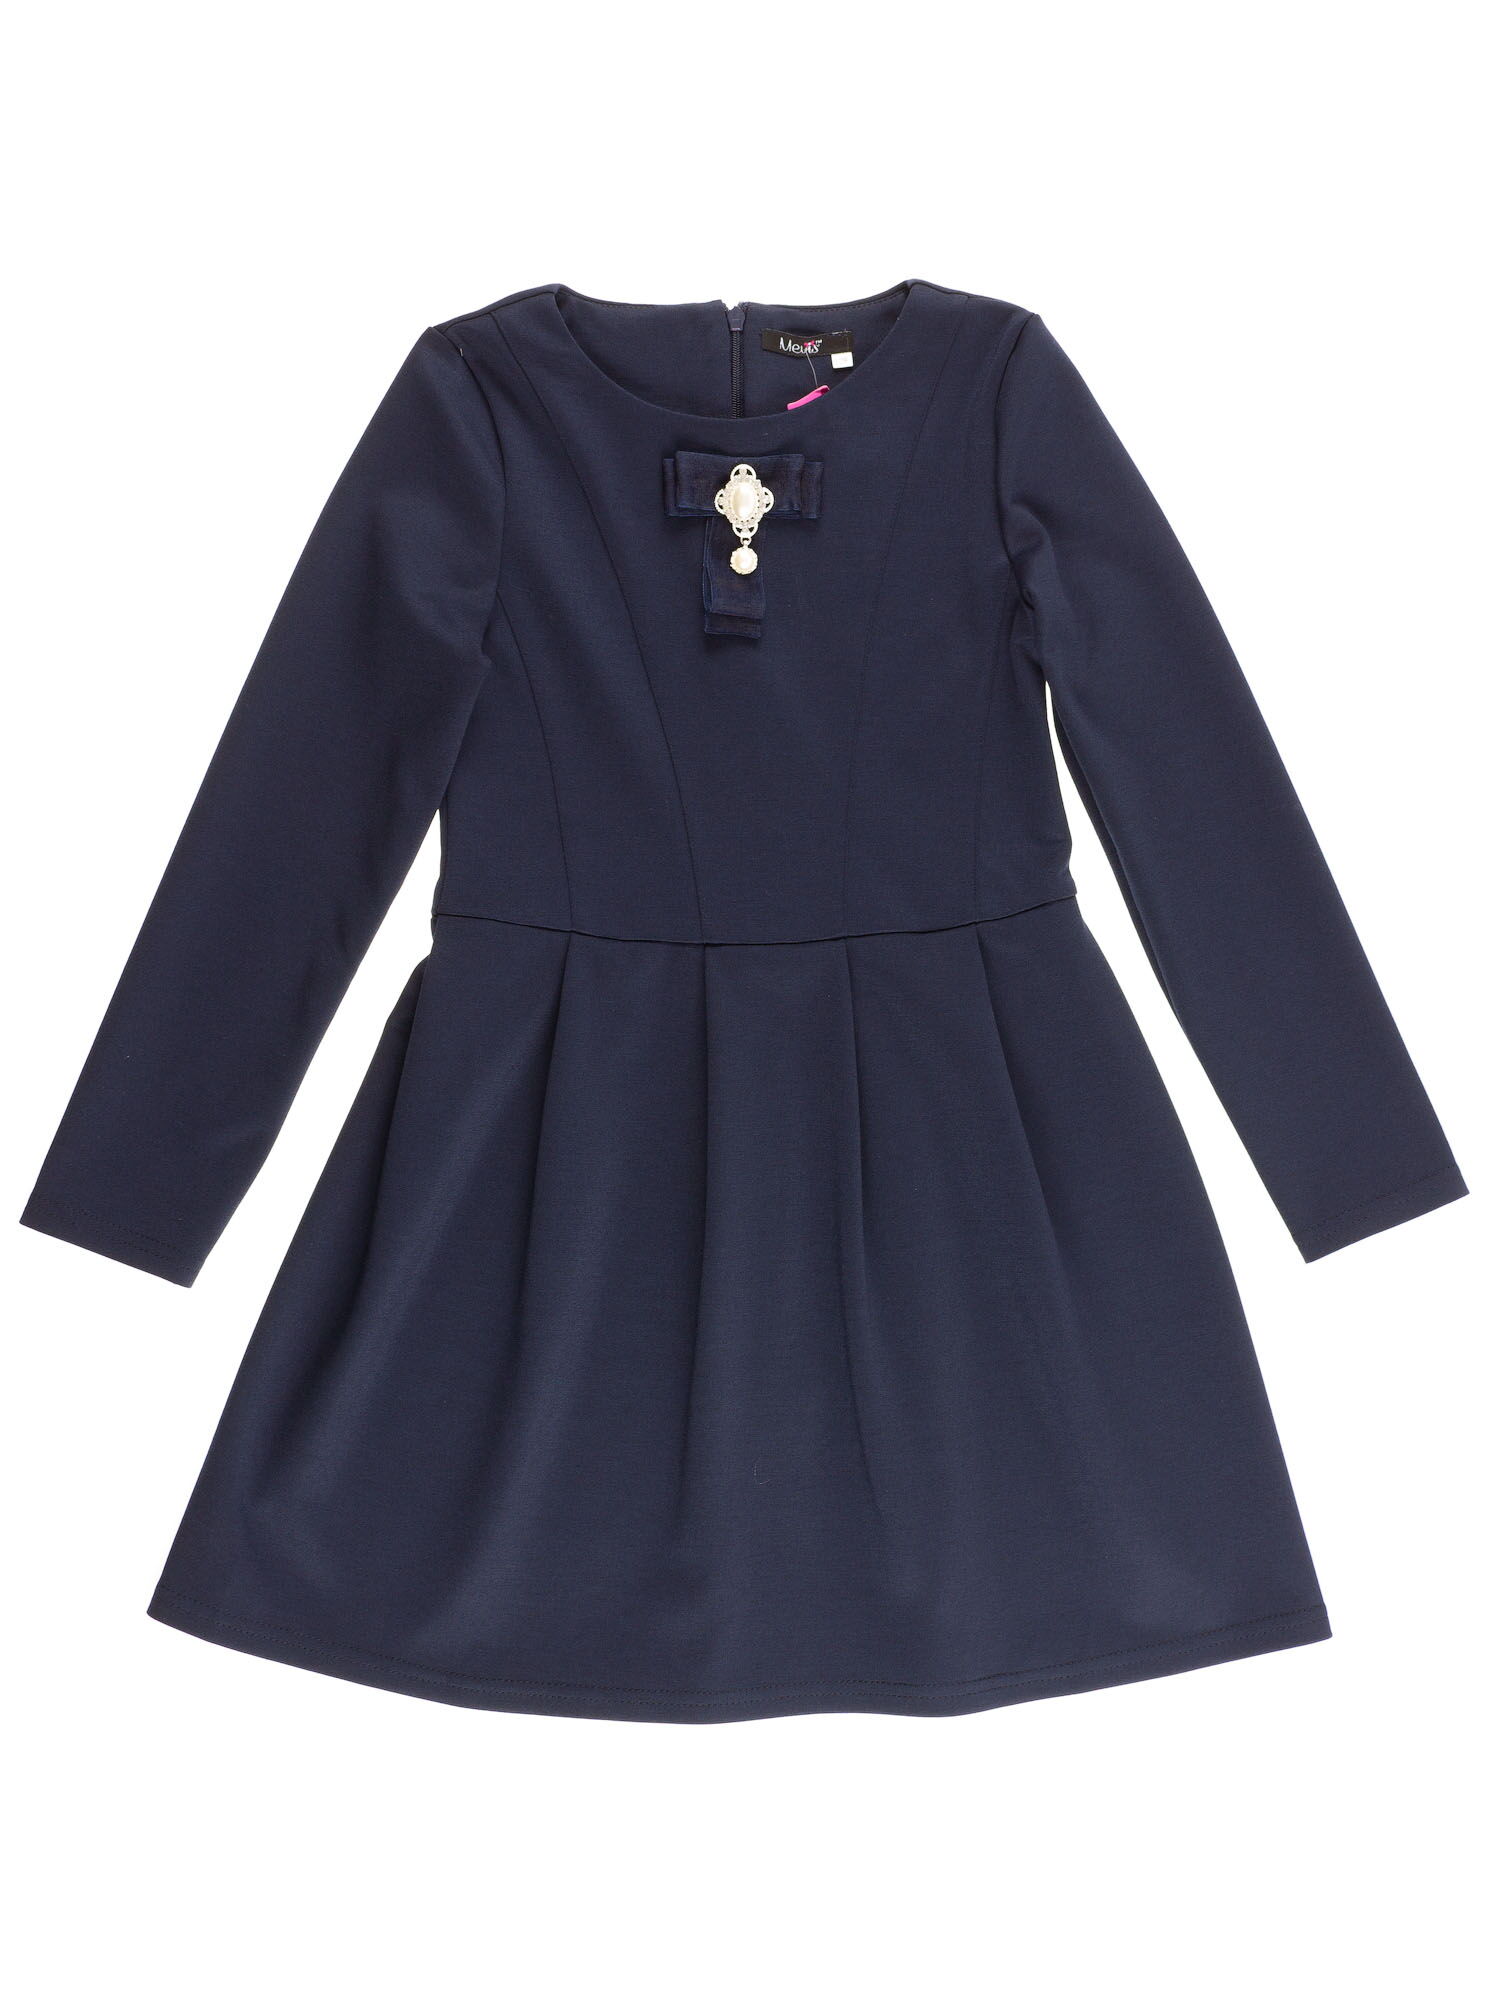 Платье школьное с длинным рукавом Mevis синее 2391-01 - цена